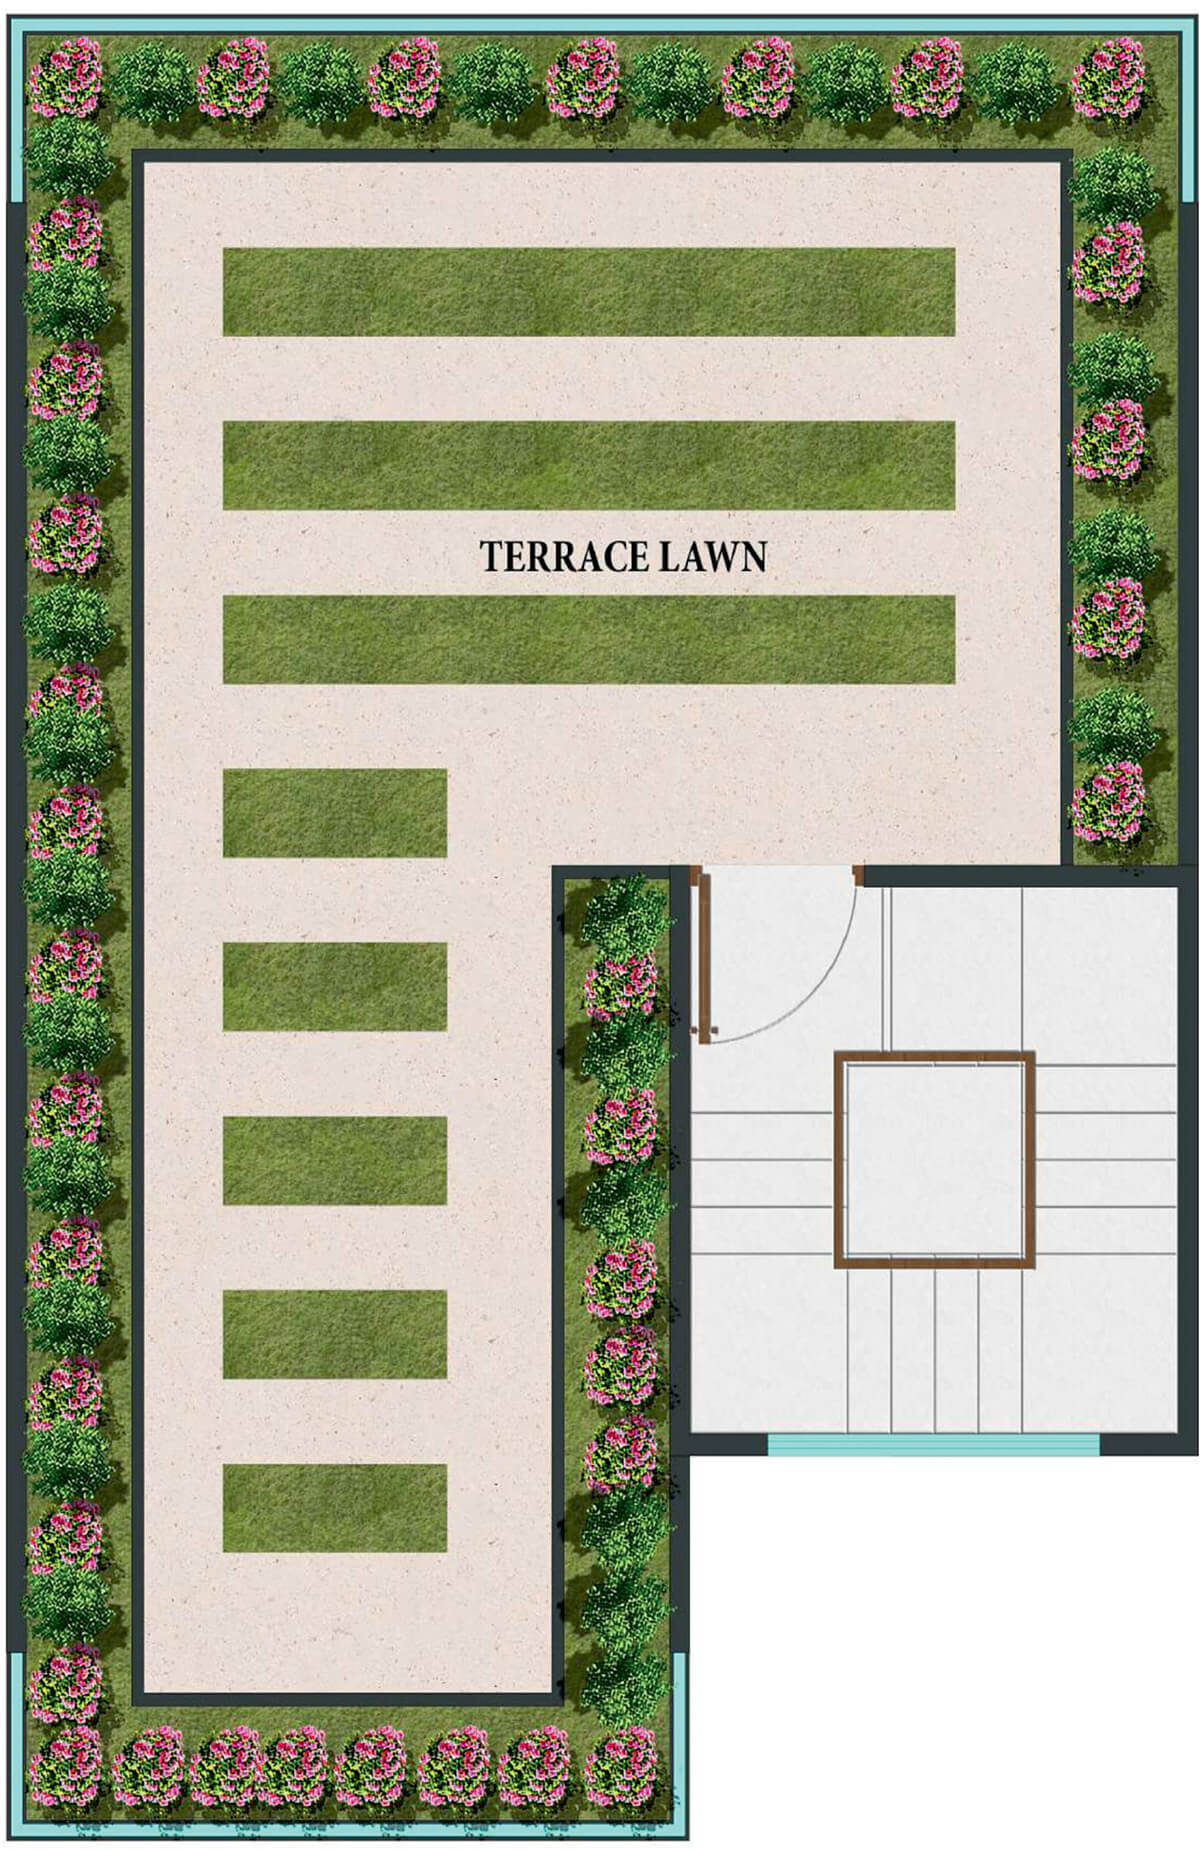 Terrace lawn